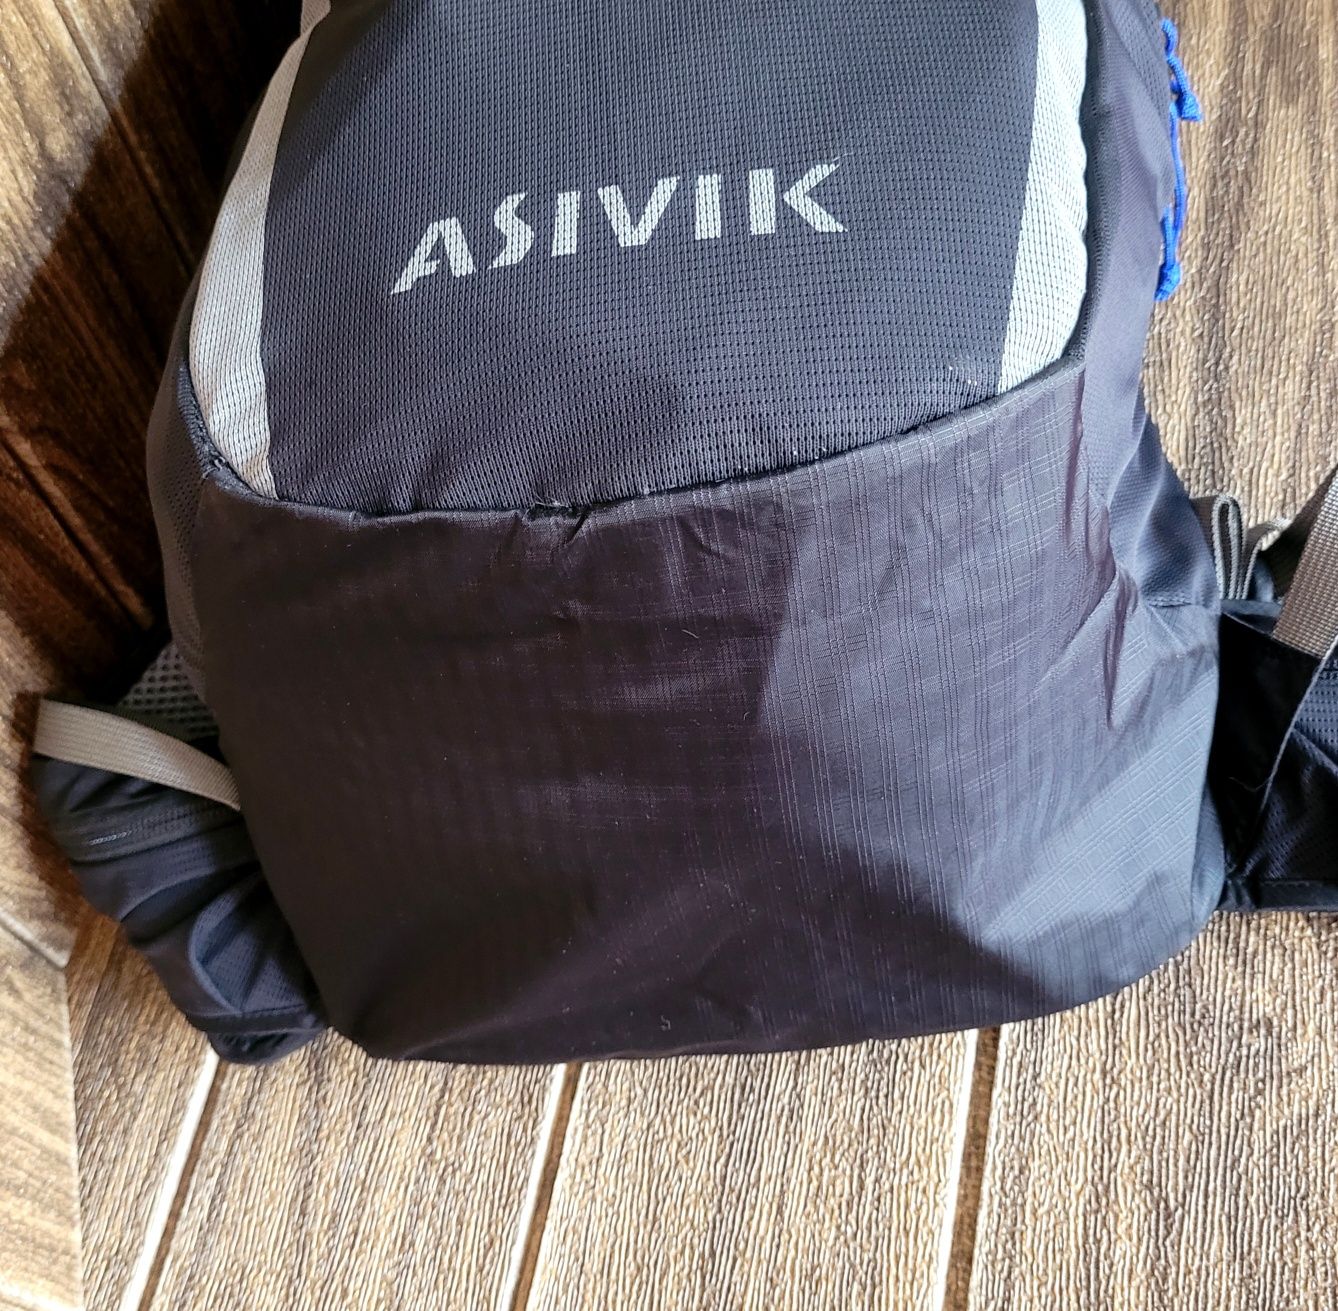 Plecak Asivik trekkingowy wycieczkowy sportowy podróżny pojemny 18 18l